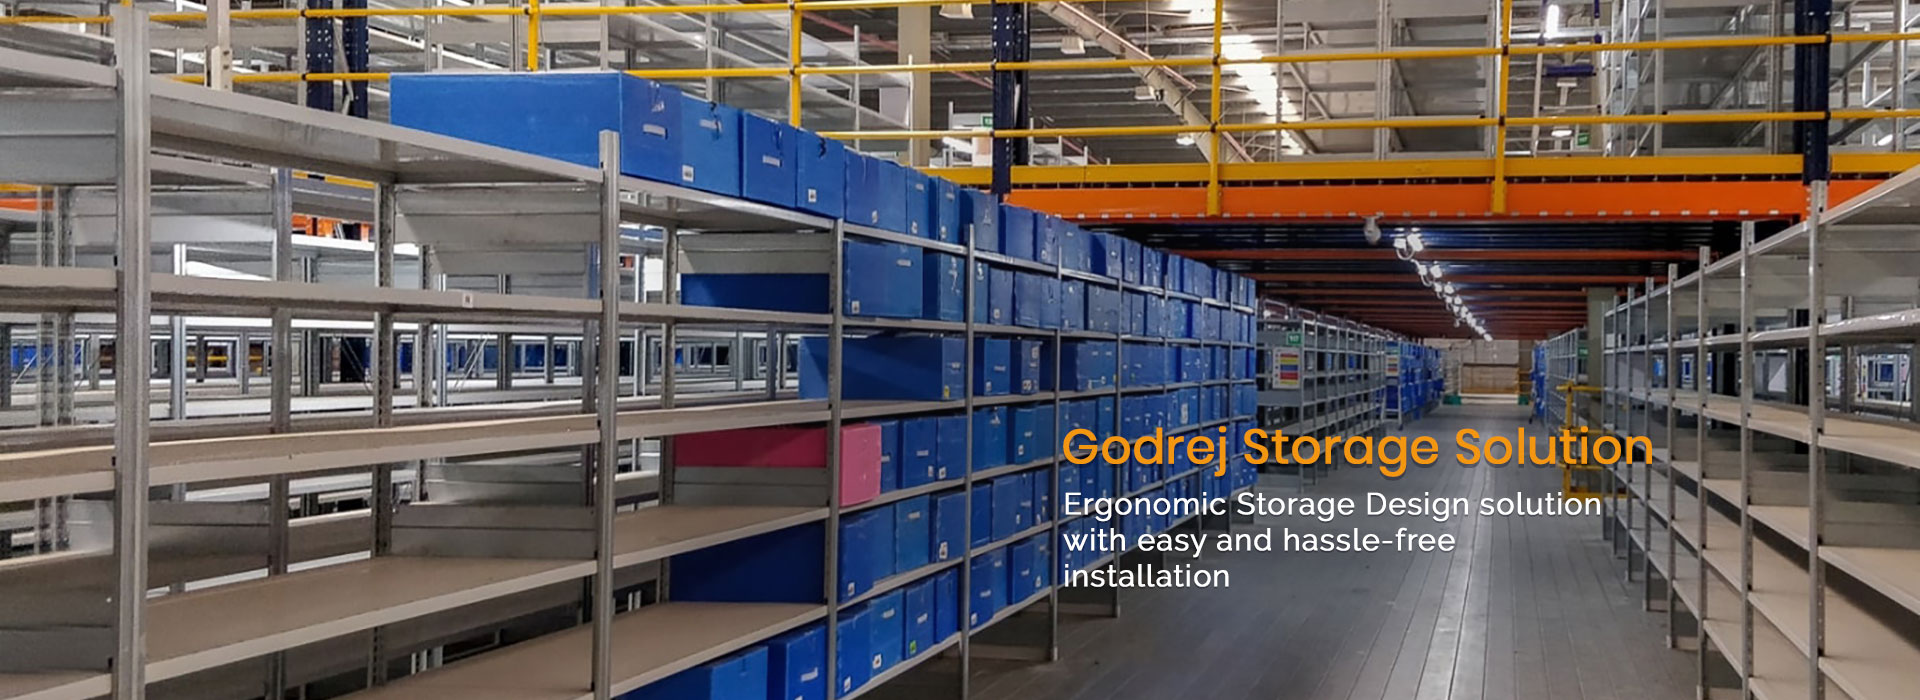 Godrej Storage Solutions in Vasant Kunj